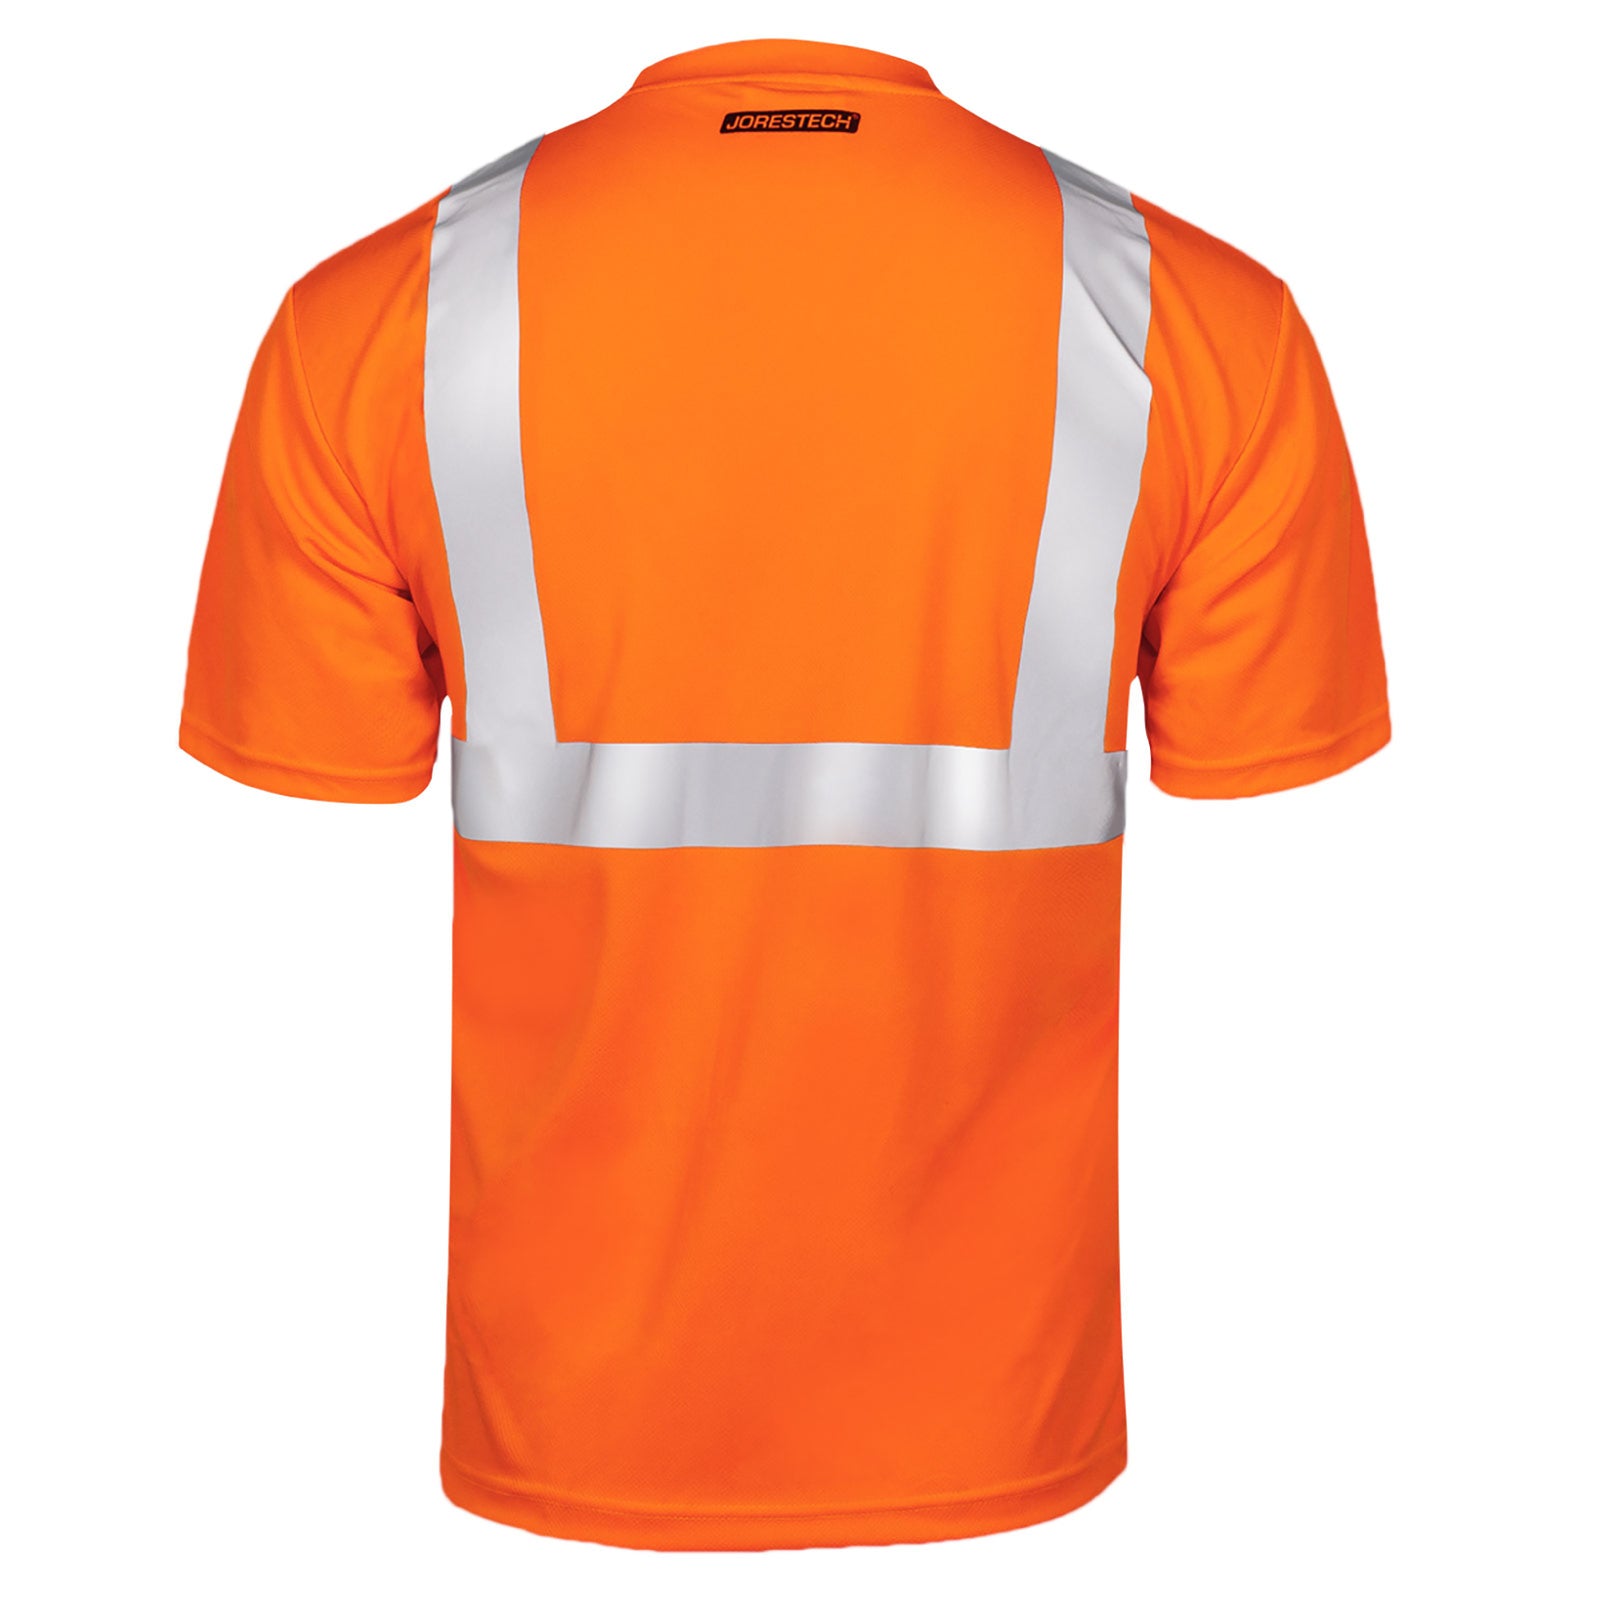 Back view of an orange heat transfer reflective JORESTECH safety shirt class 2 type R